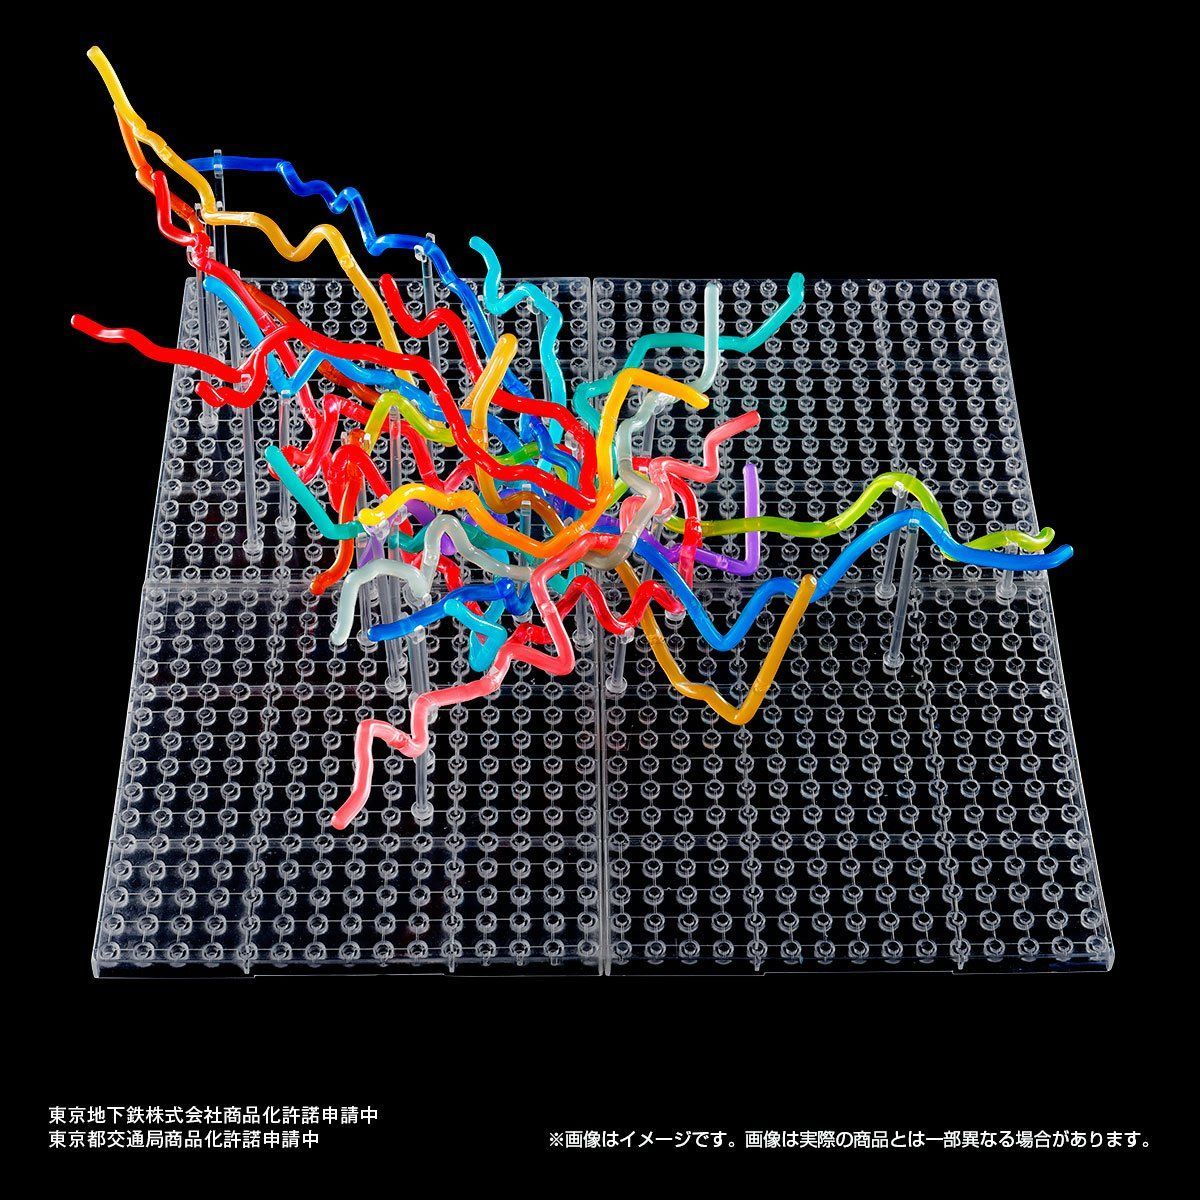 東京地下鉄立体路線図 フルコンプリートセット | フィギュア